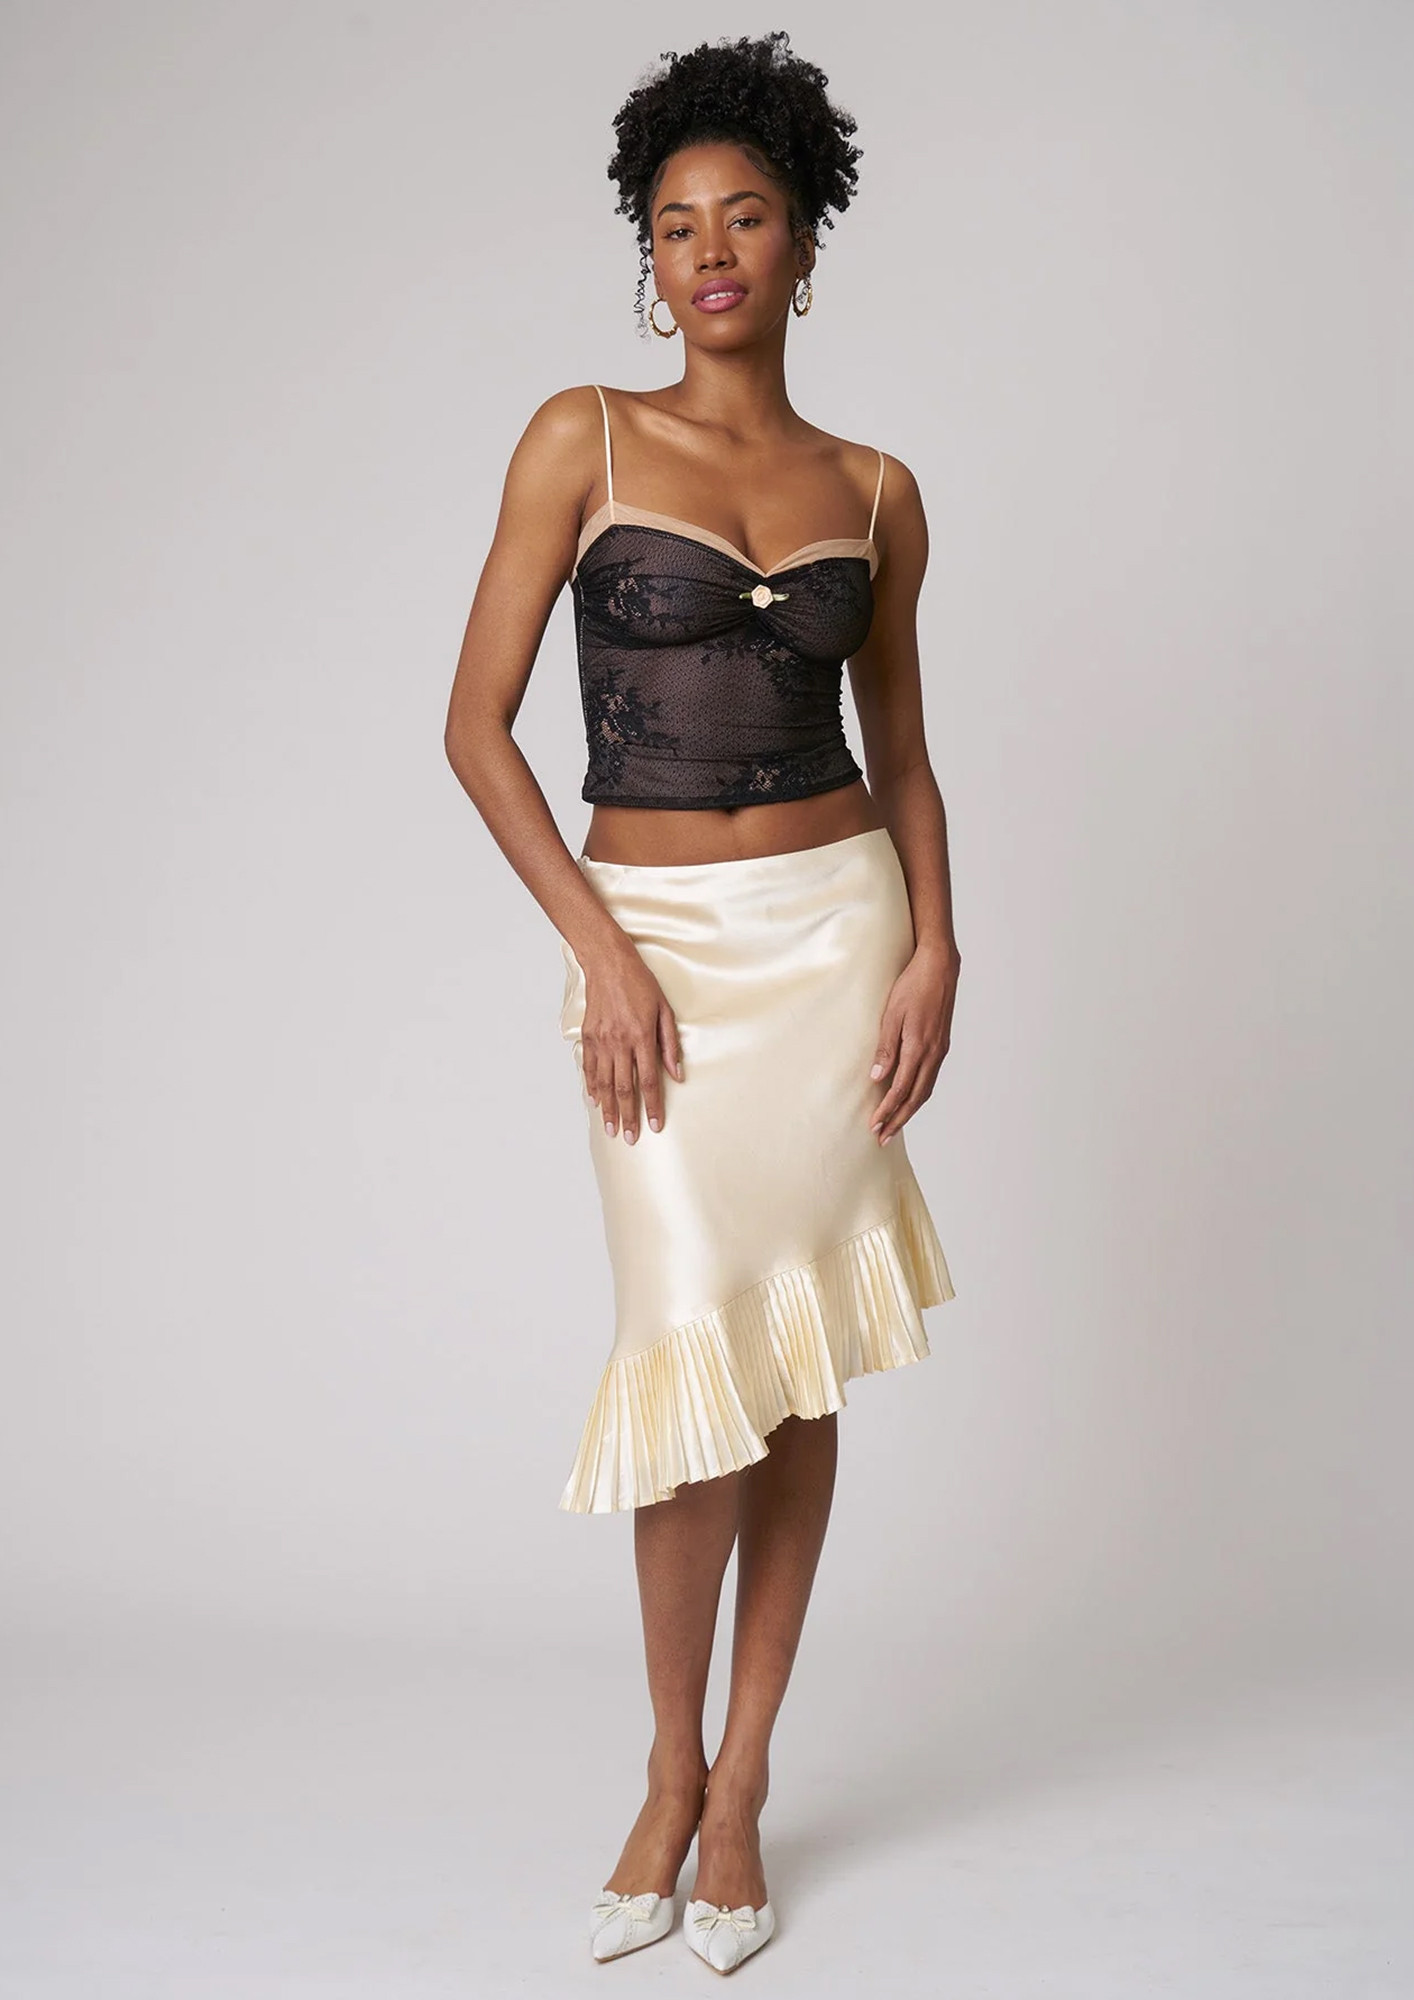 Buy Splash Cotton Rich Regular Skirt Slip for Women  Knee Length  Black   White  M at Amazonin